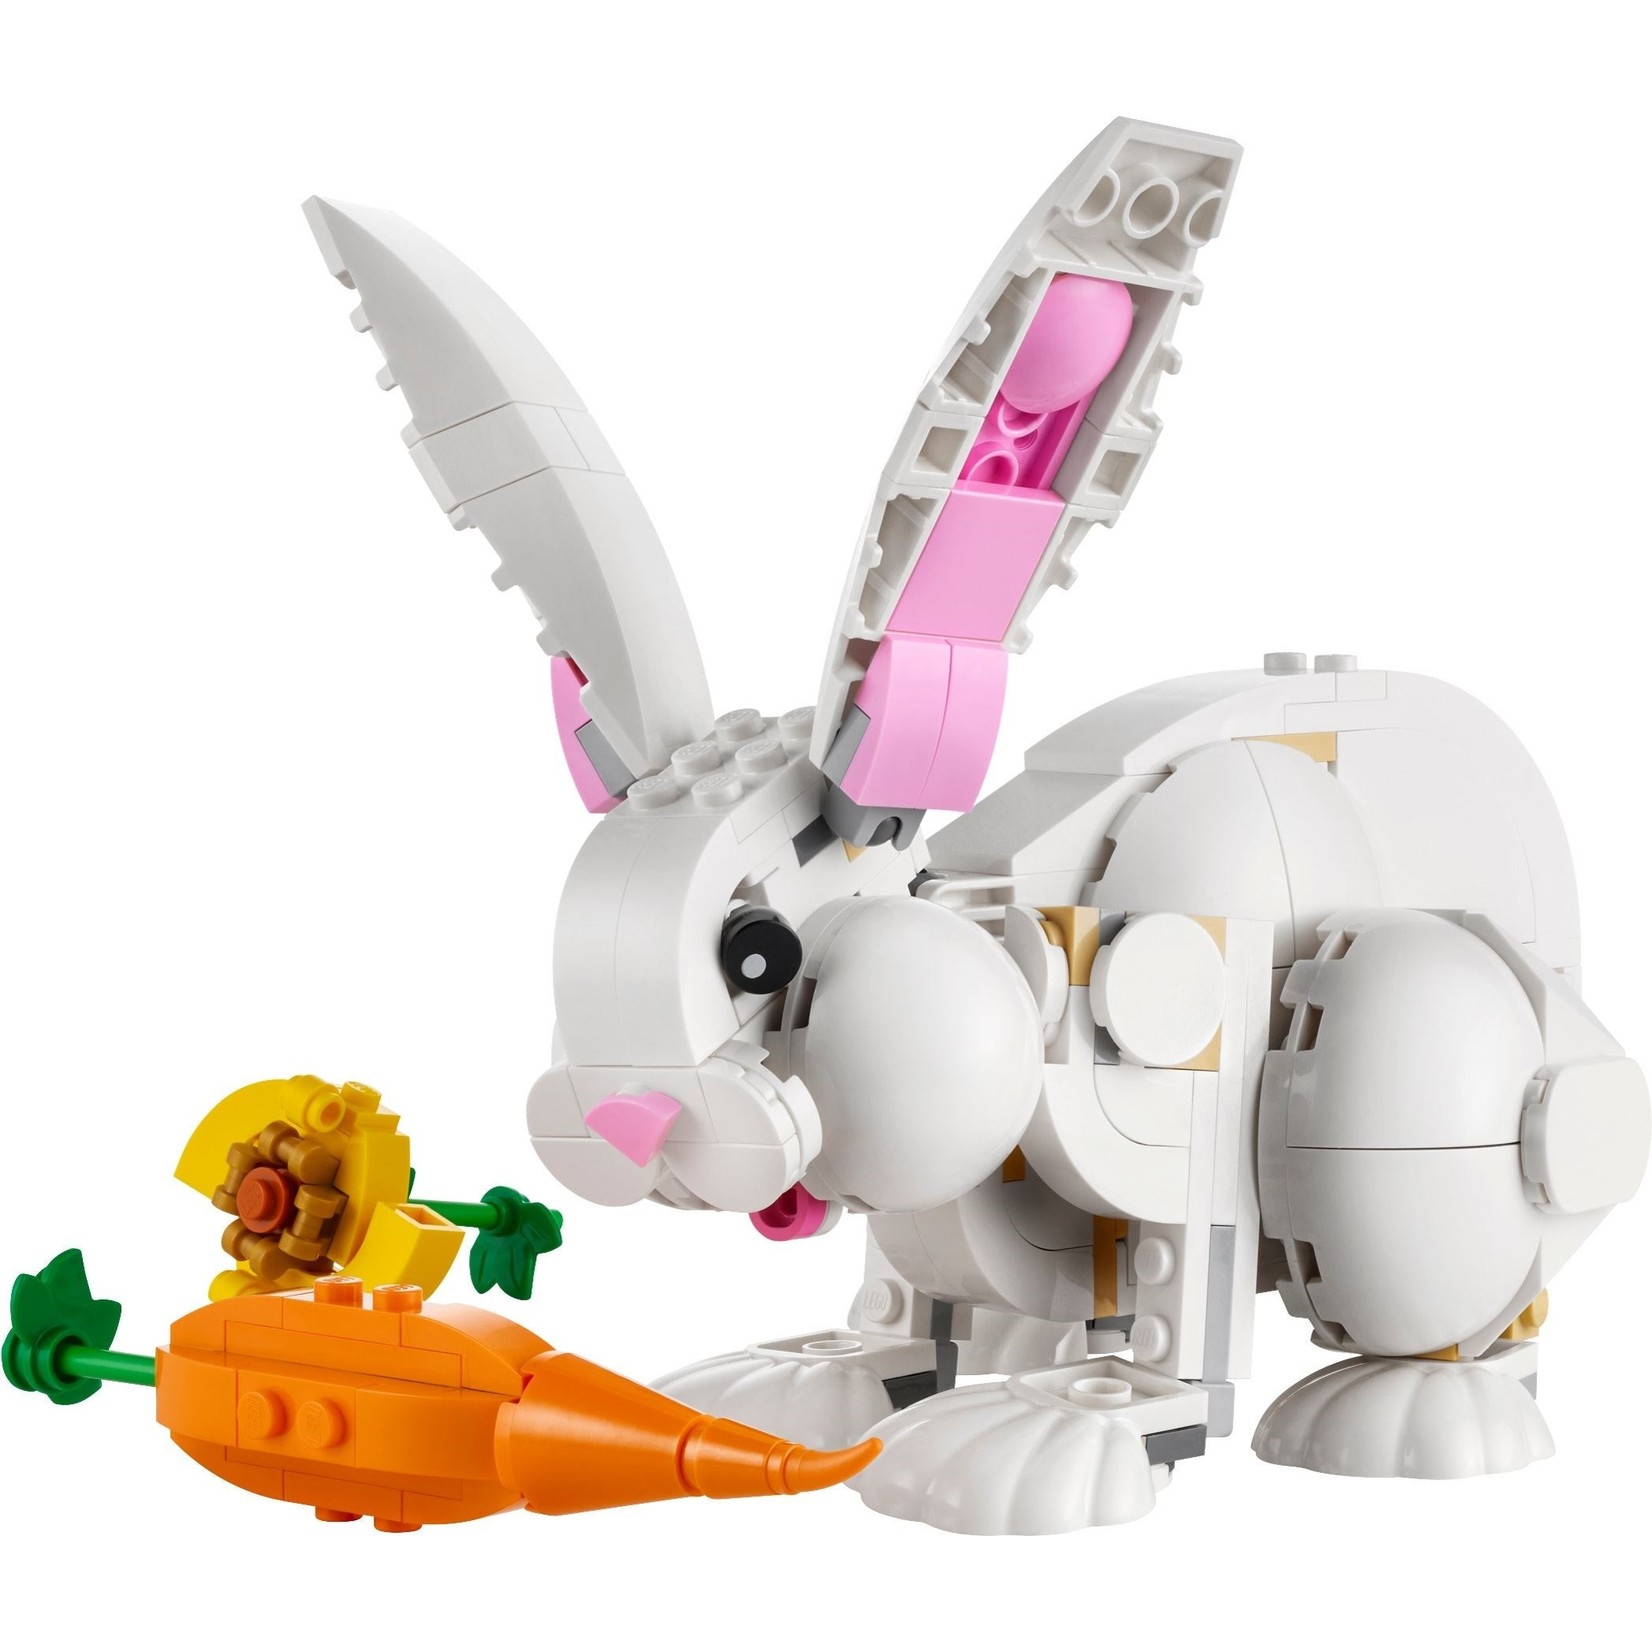 LEGO Wit Konijn - 31133